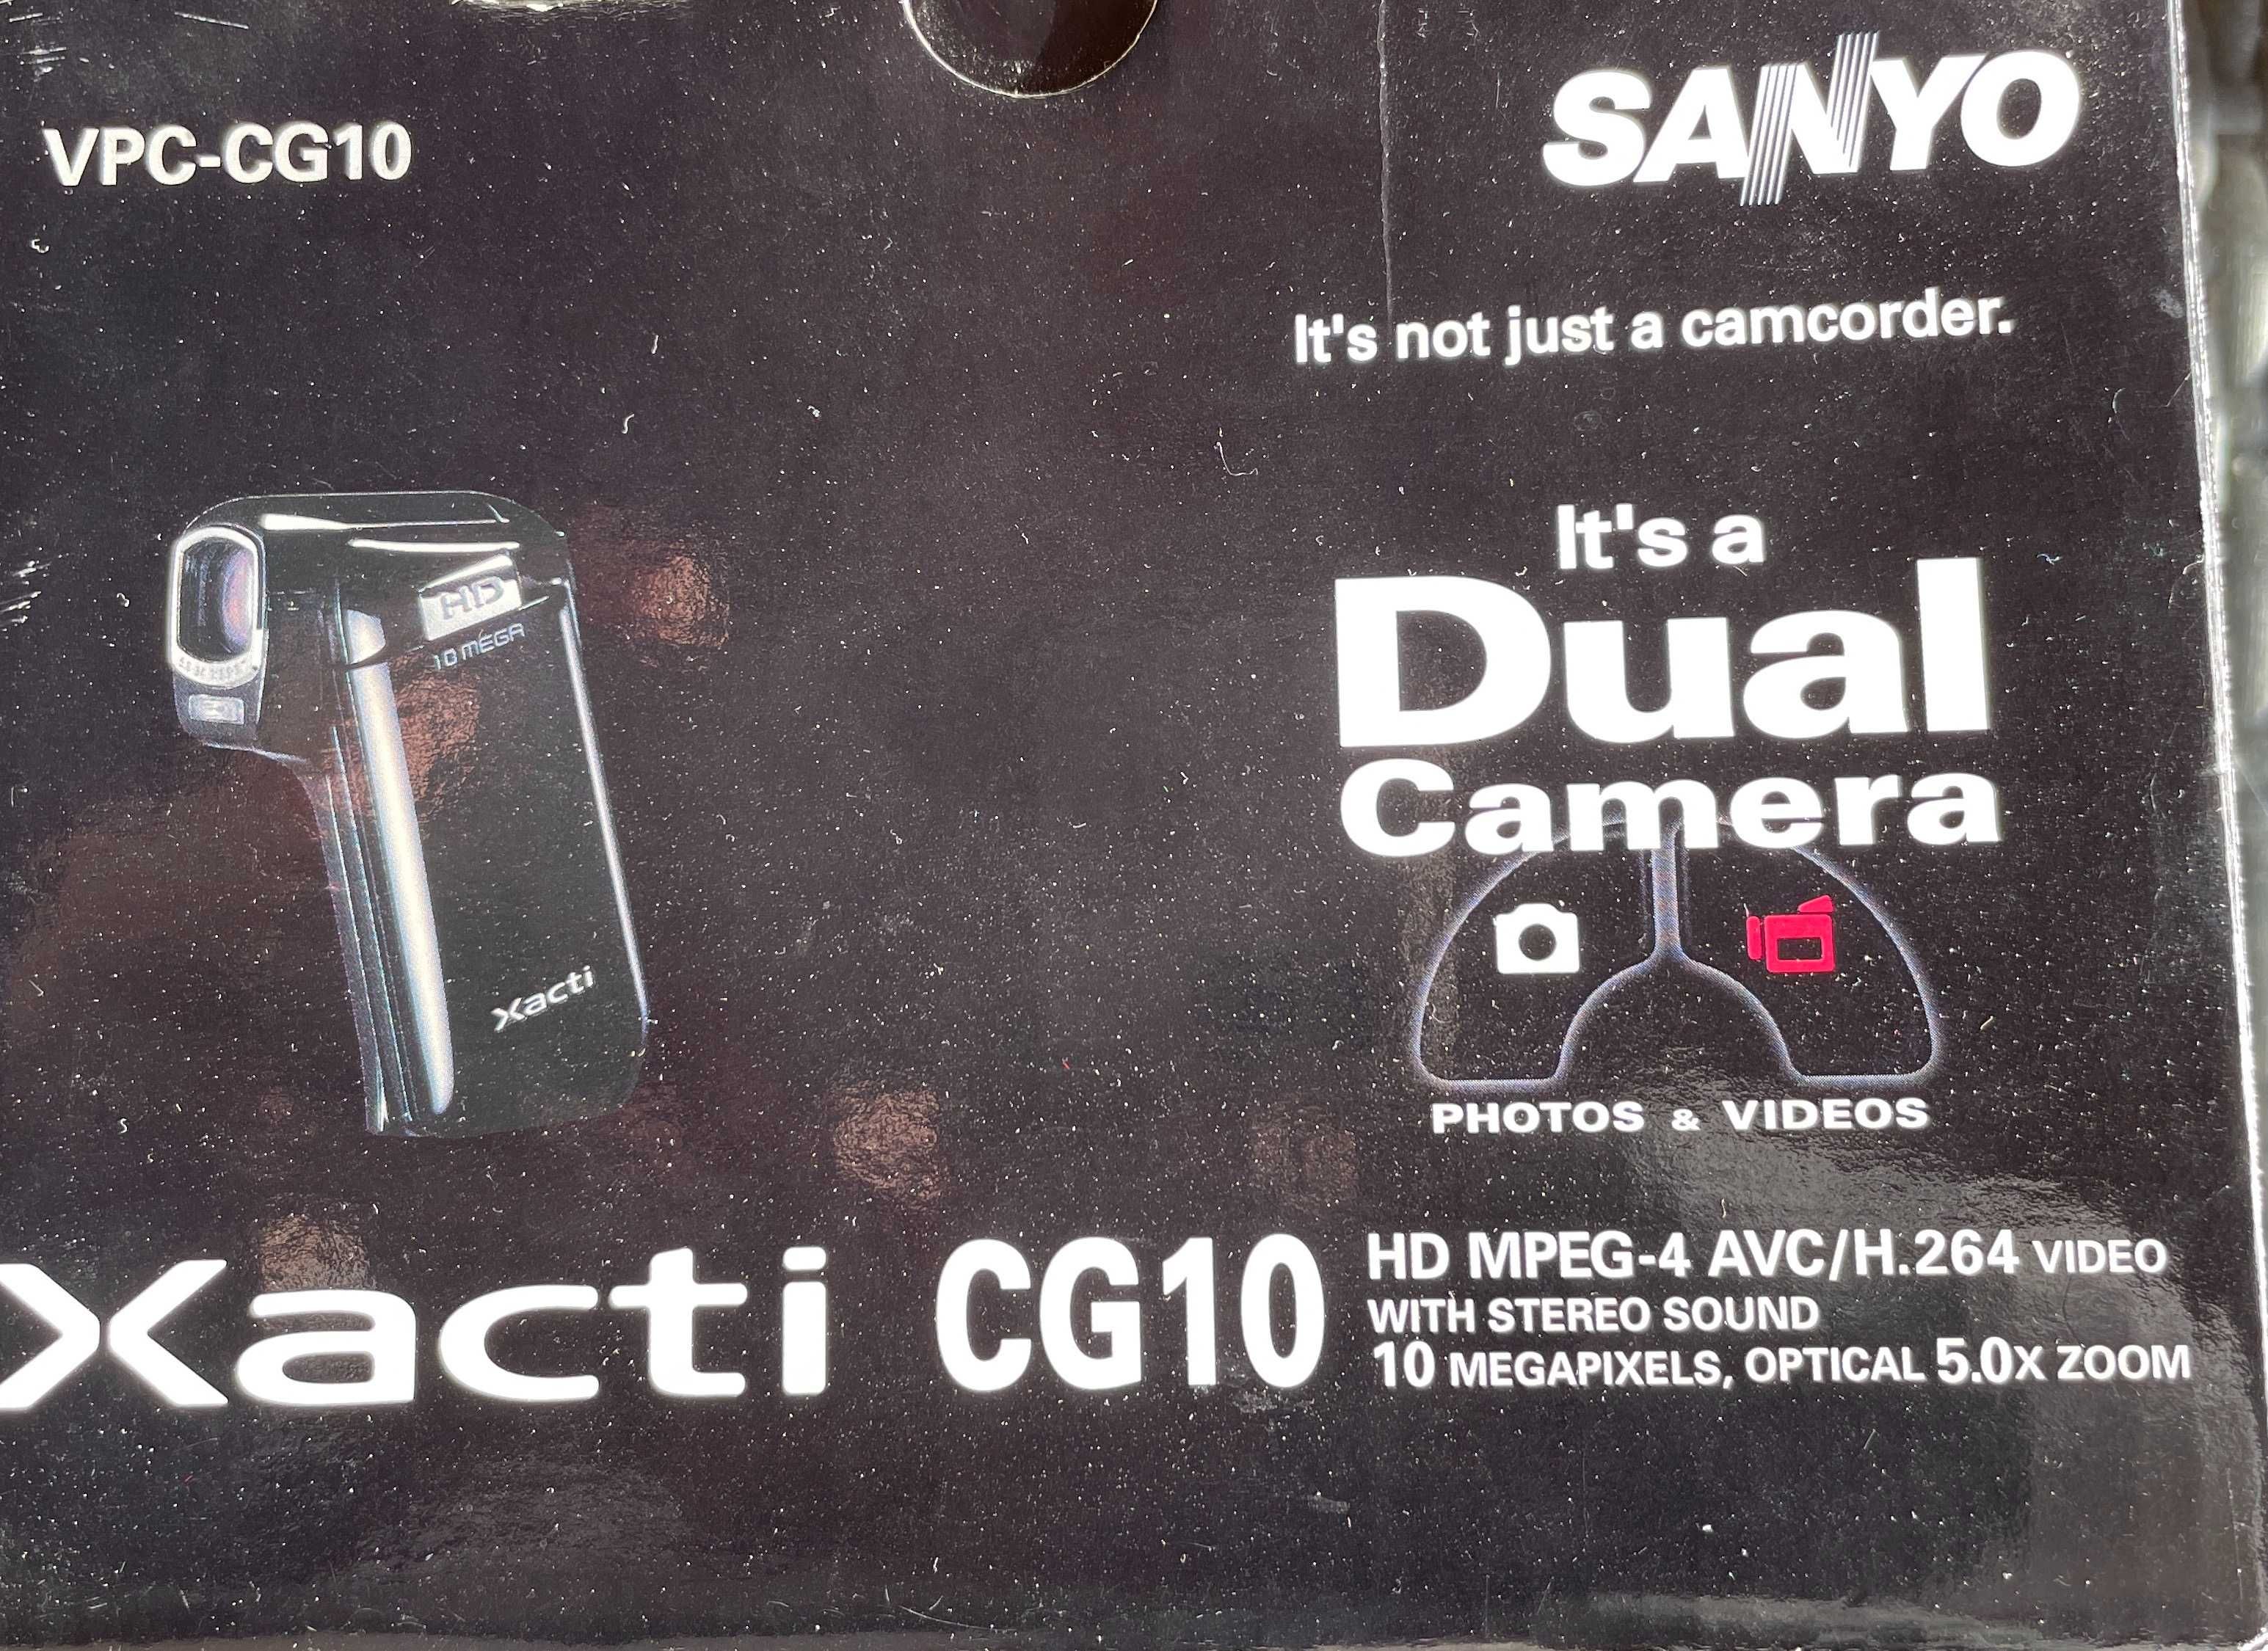 Sanyo VPC-CG10 camera HD